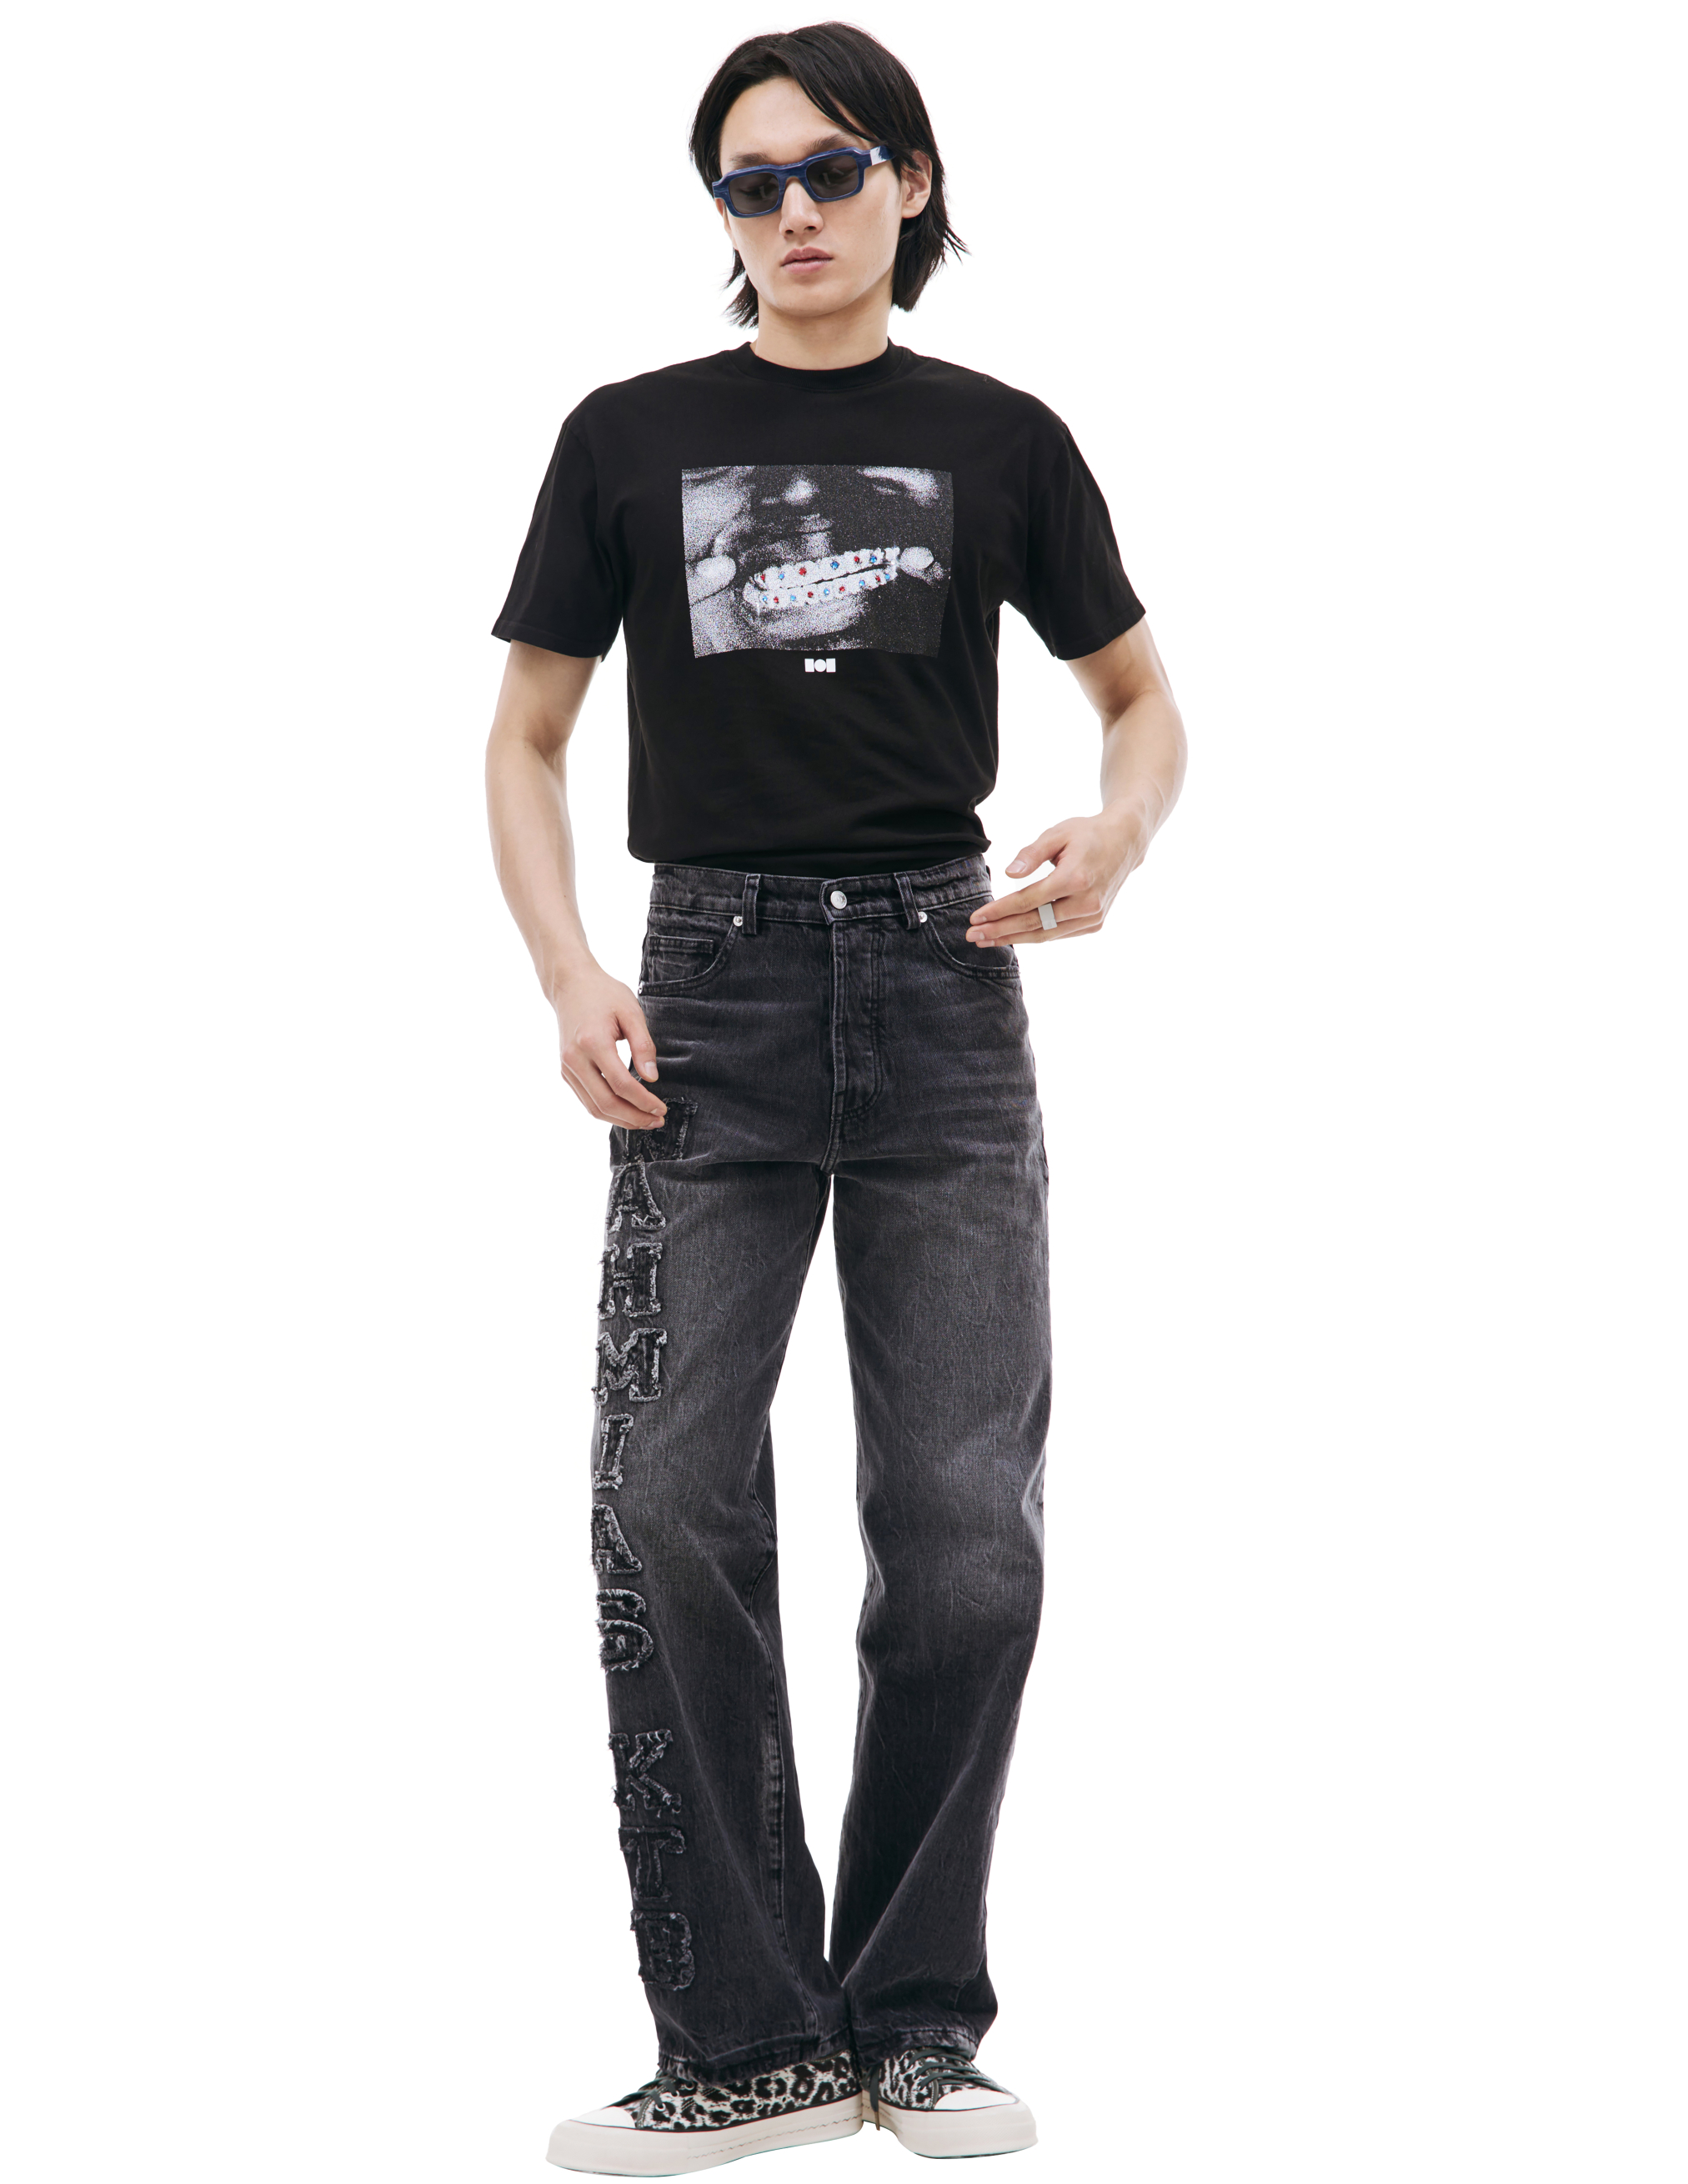 Сервые джинсы с нашивками логотипа